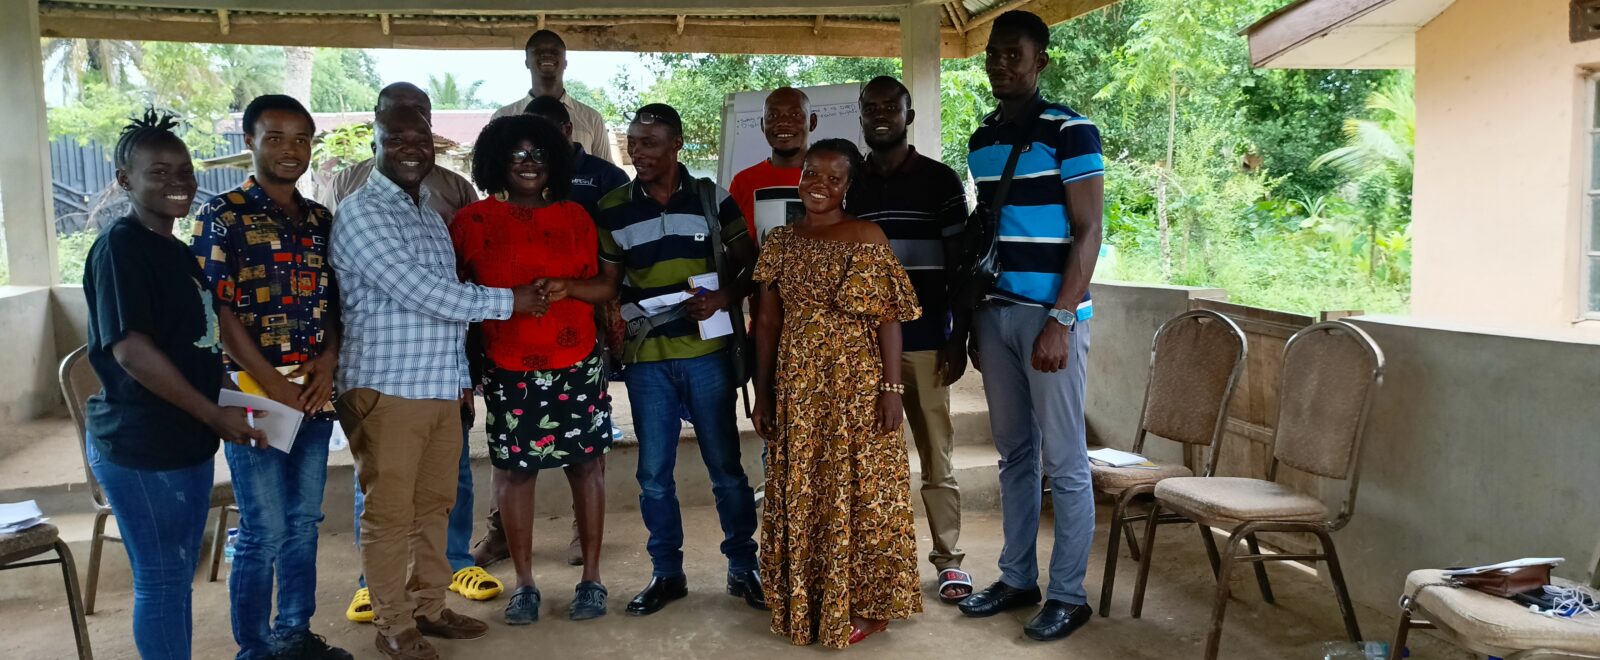 Human Rights Defenders Network Sierra Leone Enhances District Defenders’ Capacity